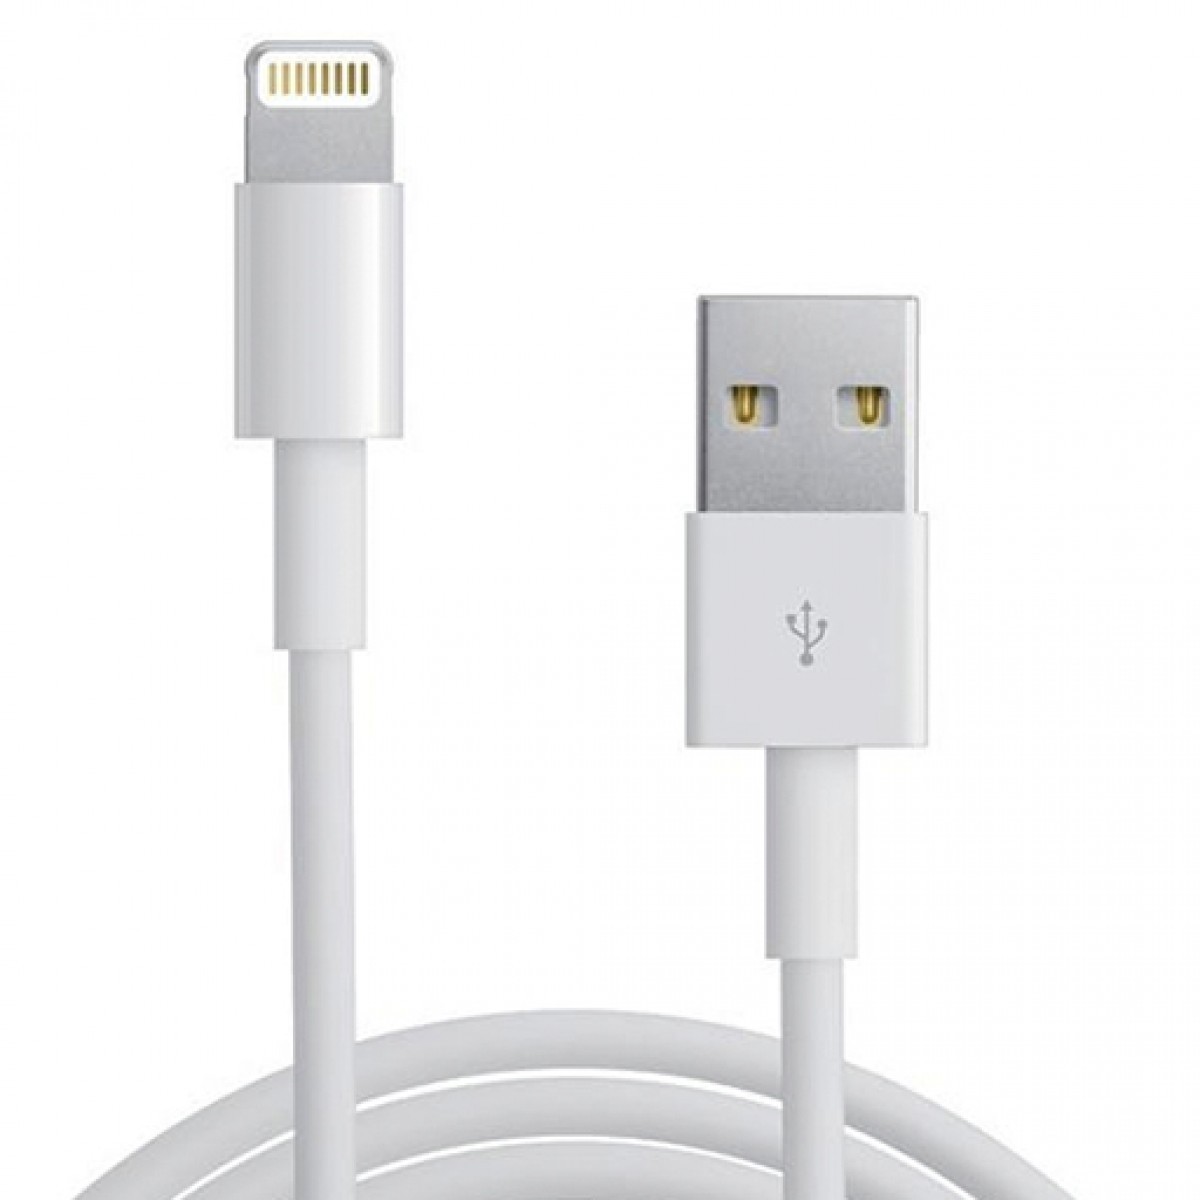 USB кабель Lightning для iPhone 5